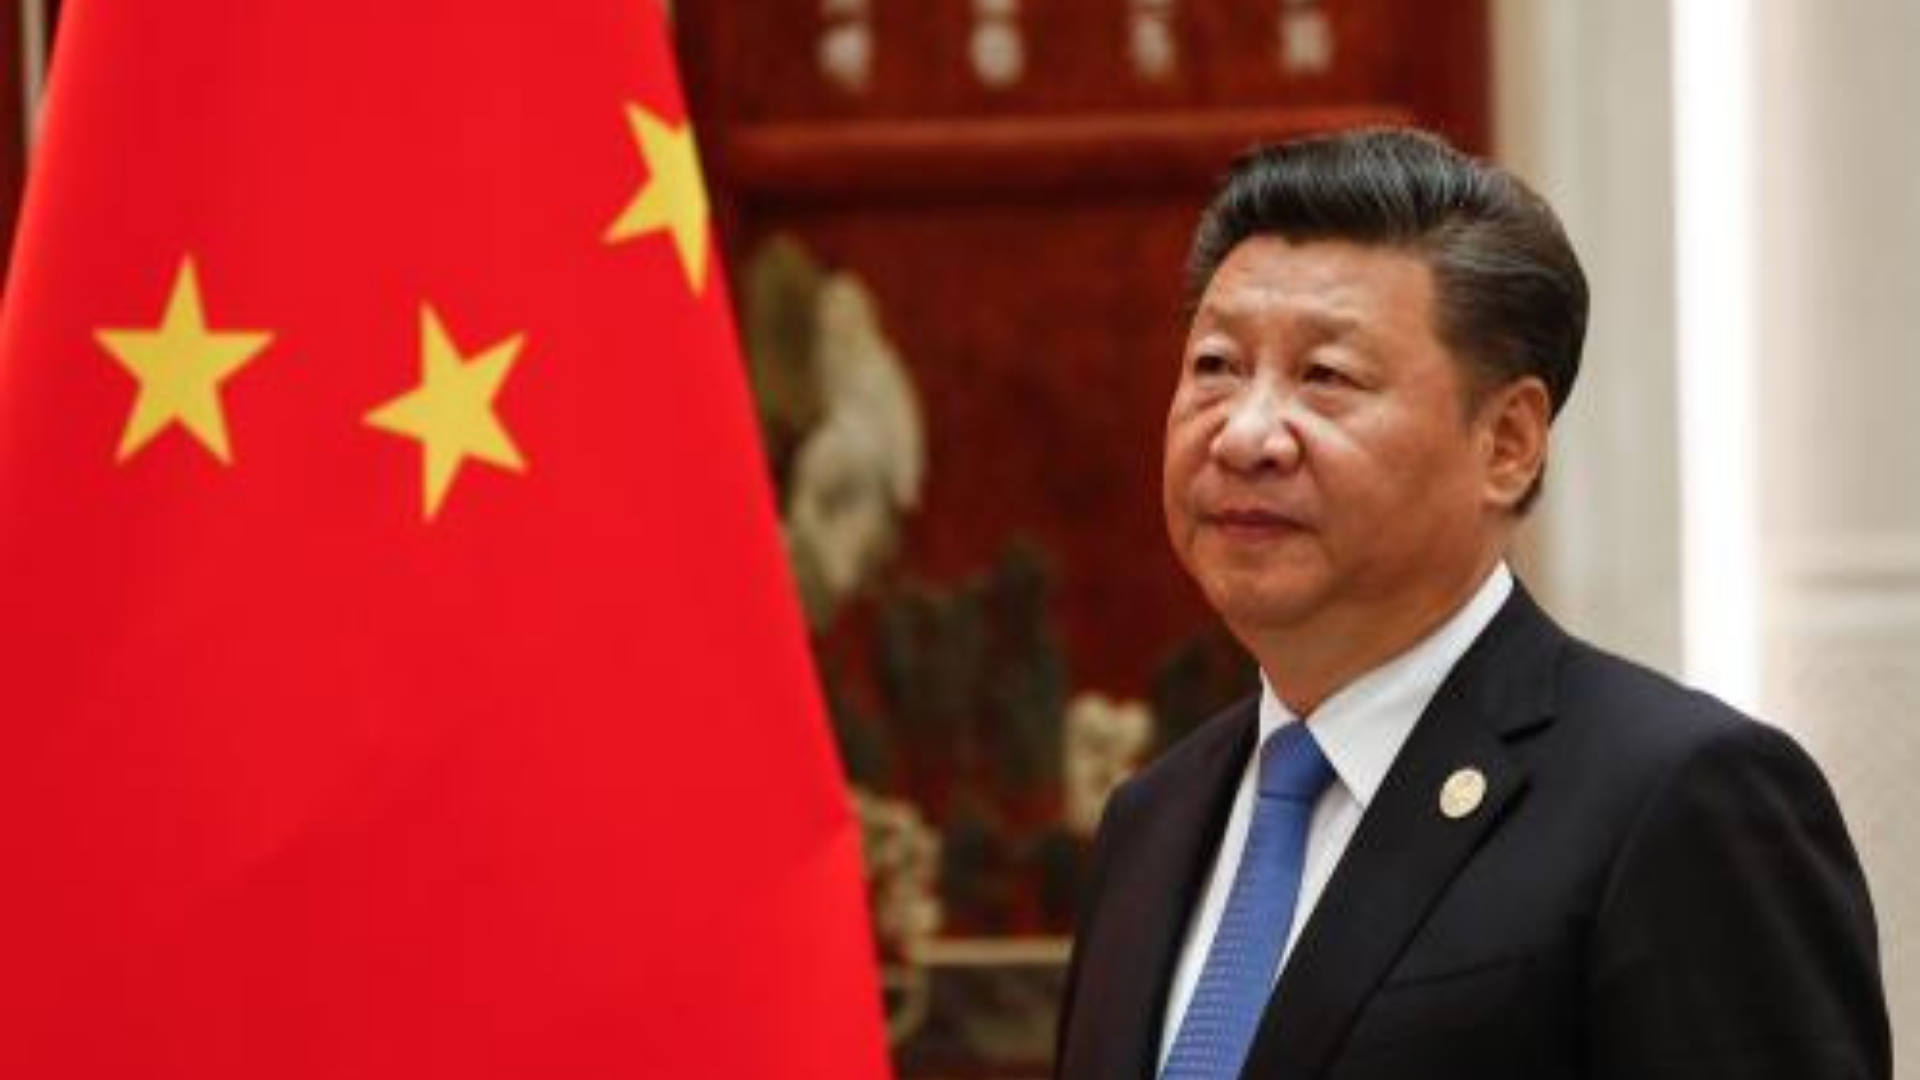 Presidente da china envia mensagem de solidariedade às vítimas de tragédia. Ele está  aparecendo de lado na imagem, usa terno preto, cabelo preto e à frente há uma bandeira da China.